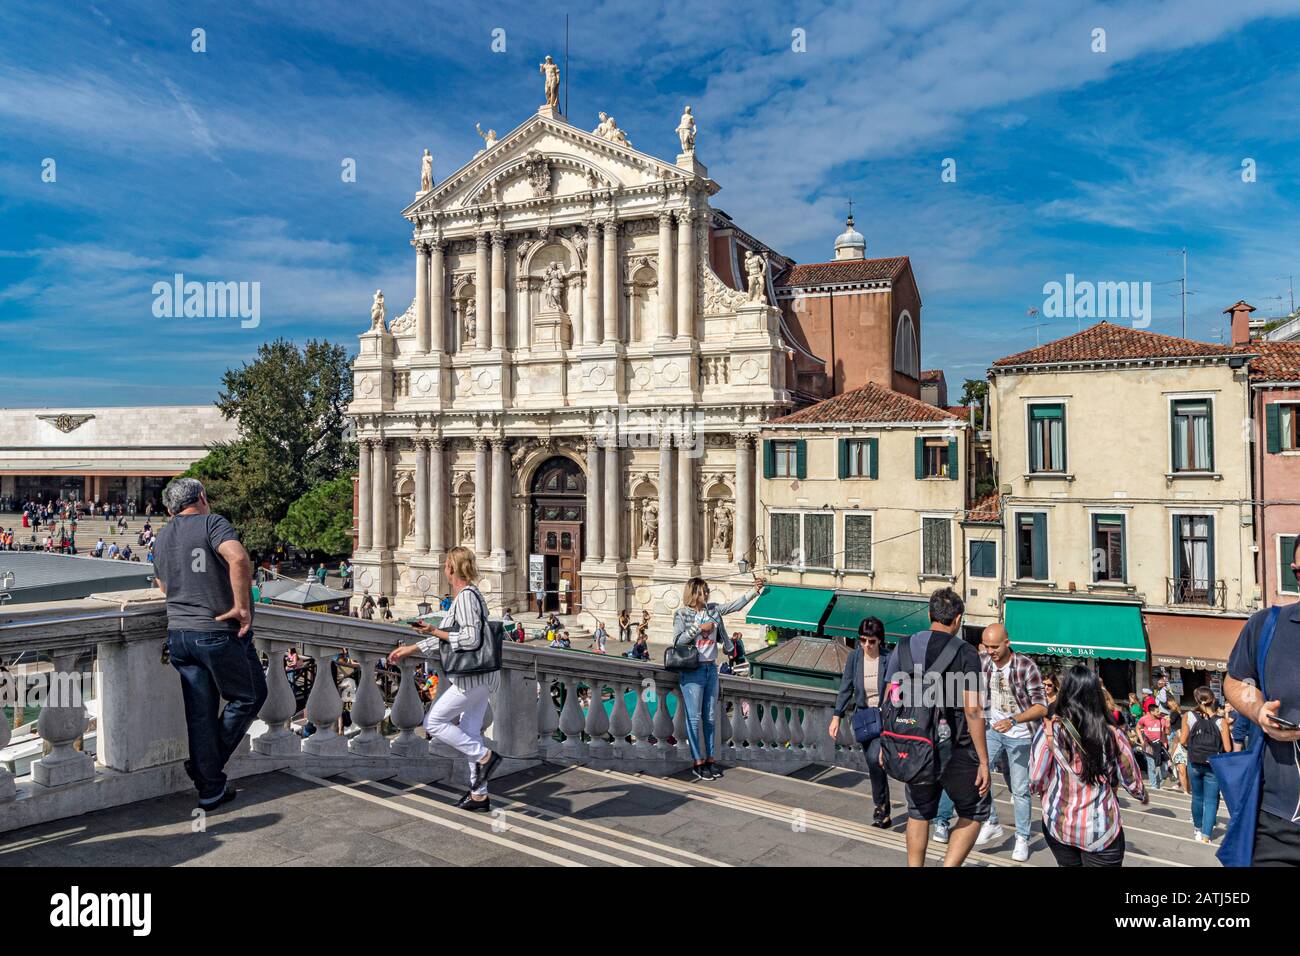 Menschen auf der Scalzi-Brücke mit dem äußeren der Kirche Santa Maria di Nazareth, die zum Canal Grande in der Nähe des Bahnhofs Santa Lucia, Venedig, Italien, führt Stockfoto